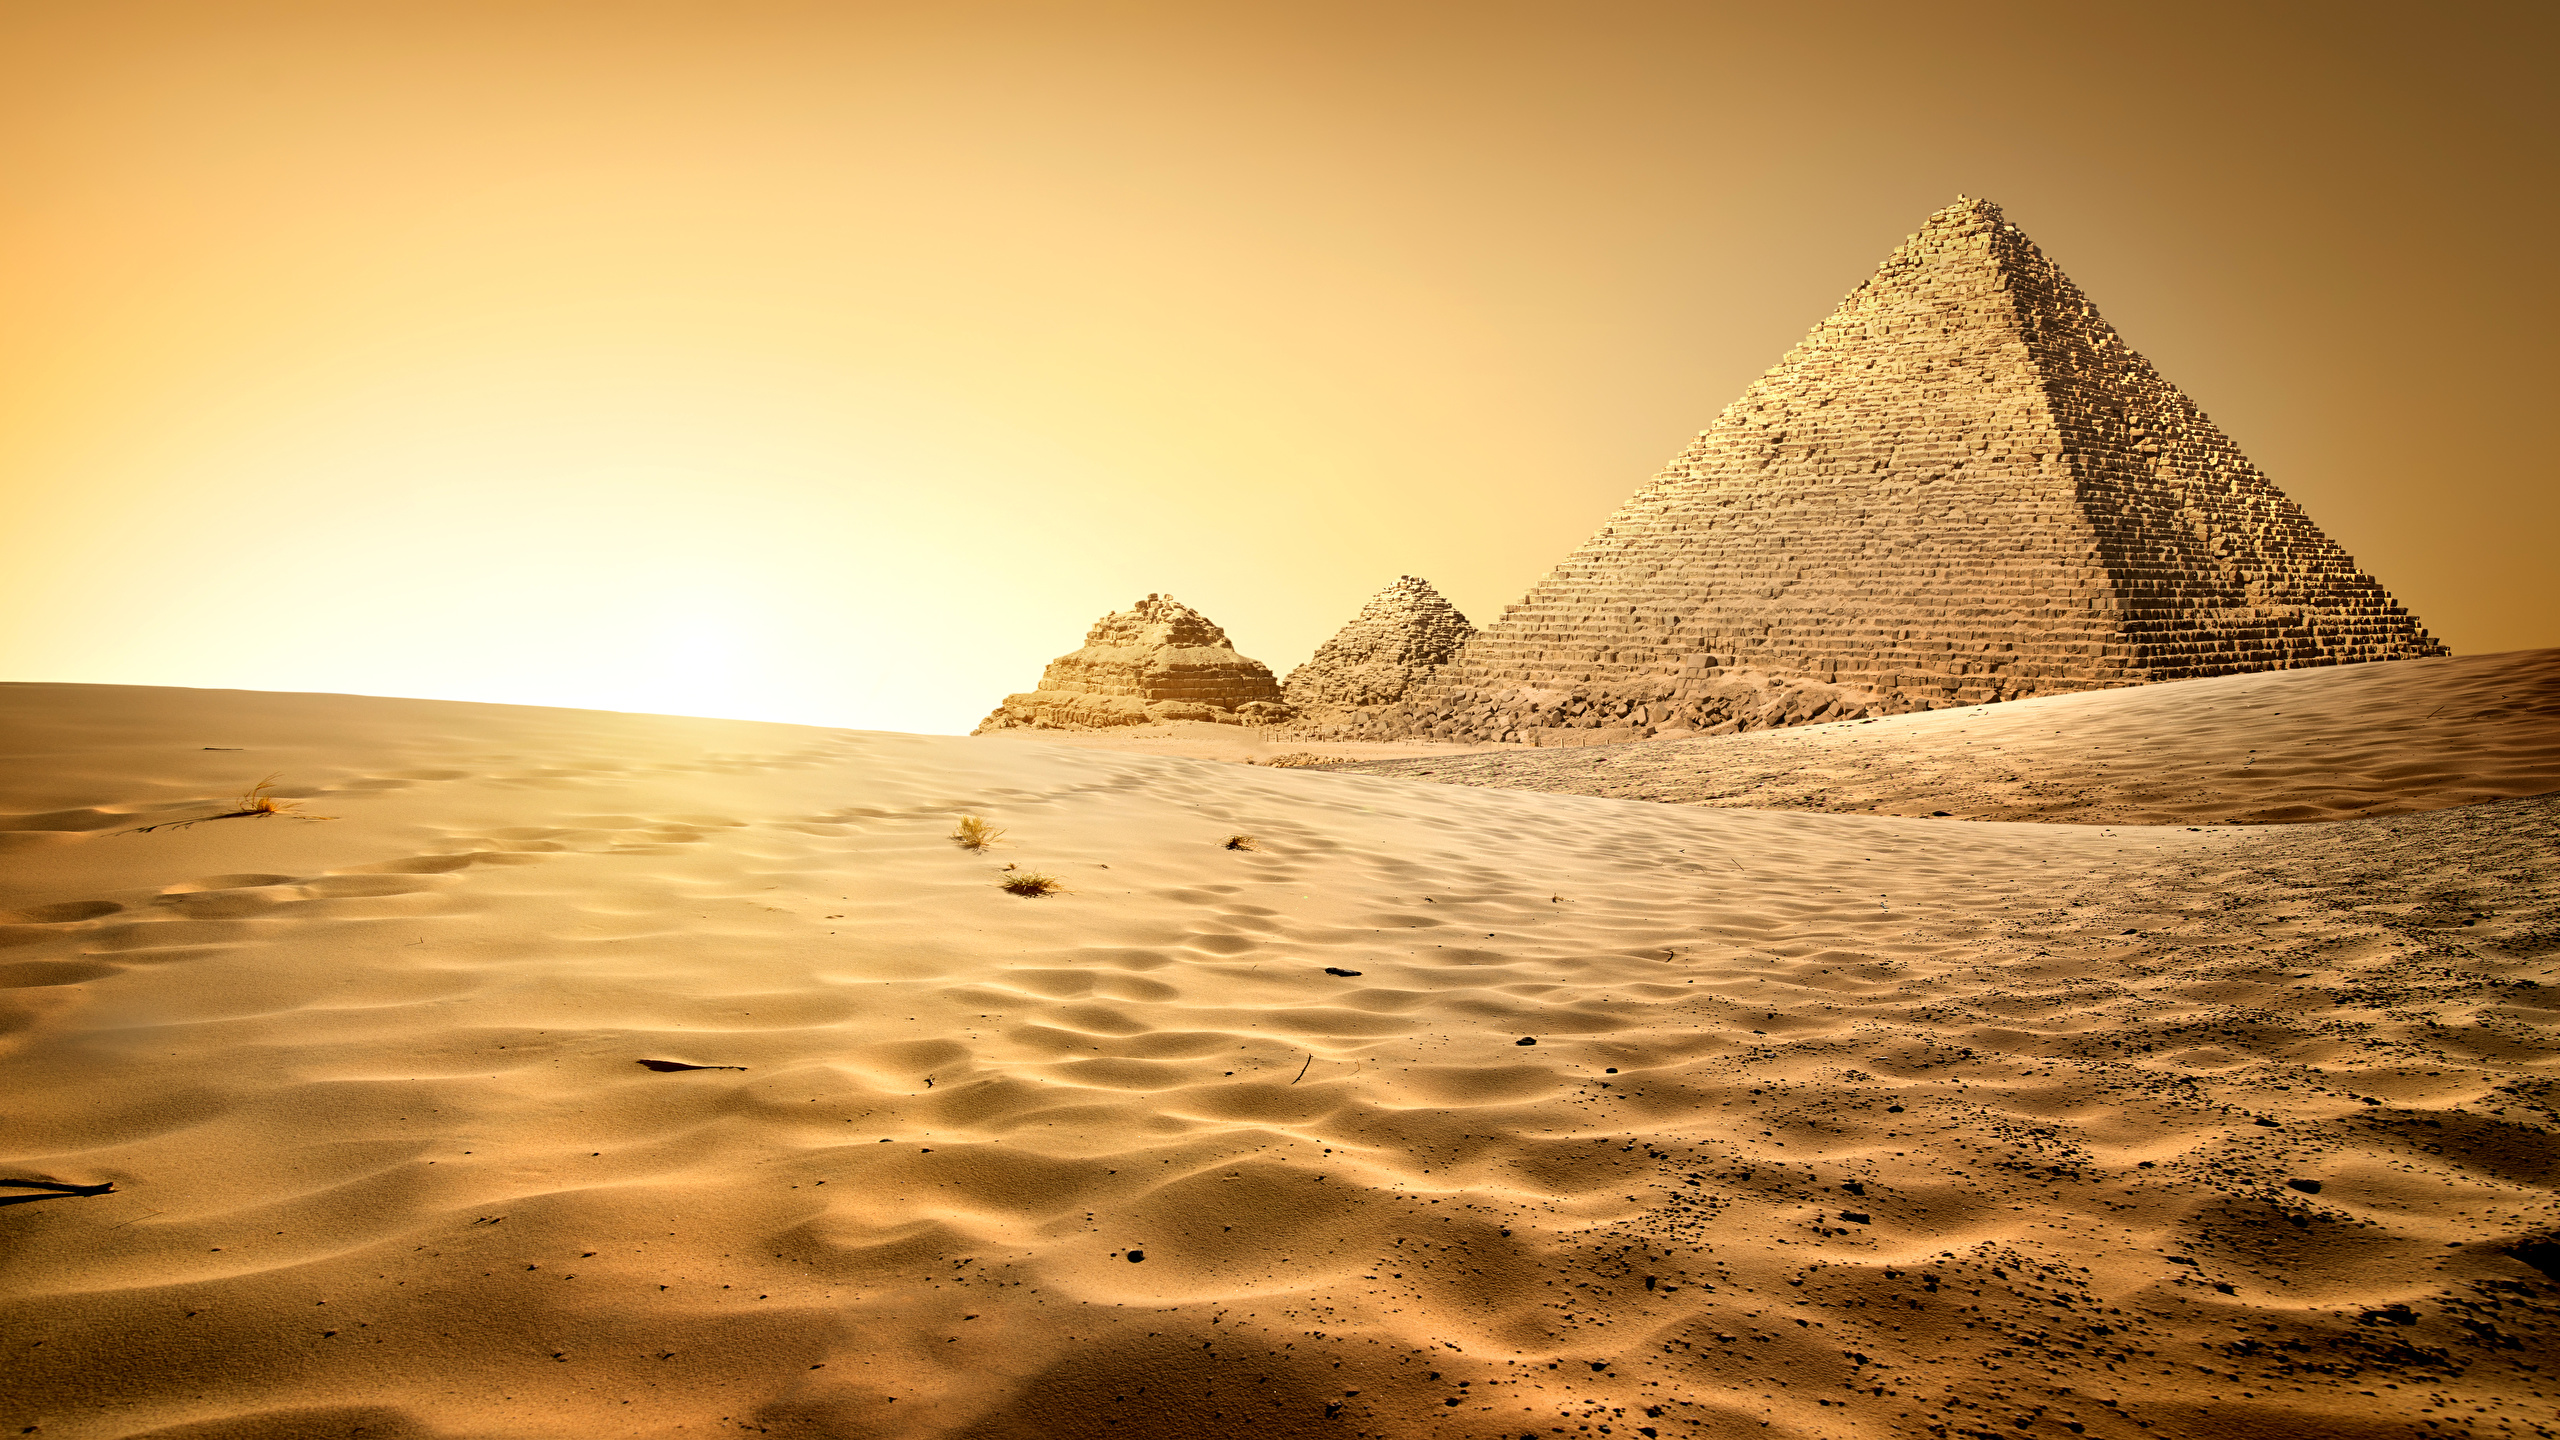 壁紙 2560x1440 エジプト 砂漠 Cairo ピラミッド 砂 自然 ダウンロード 写真